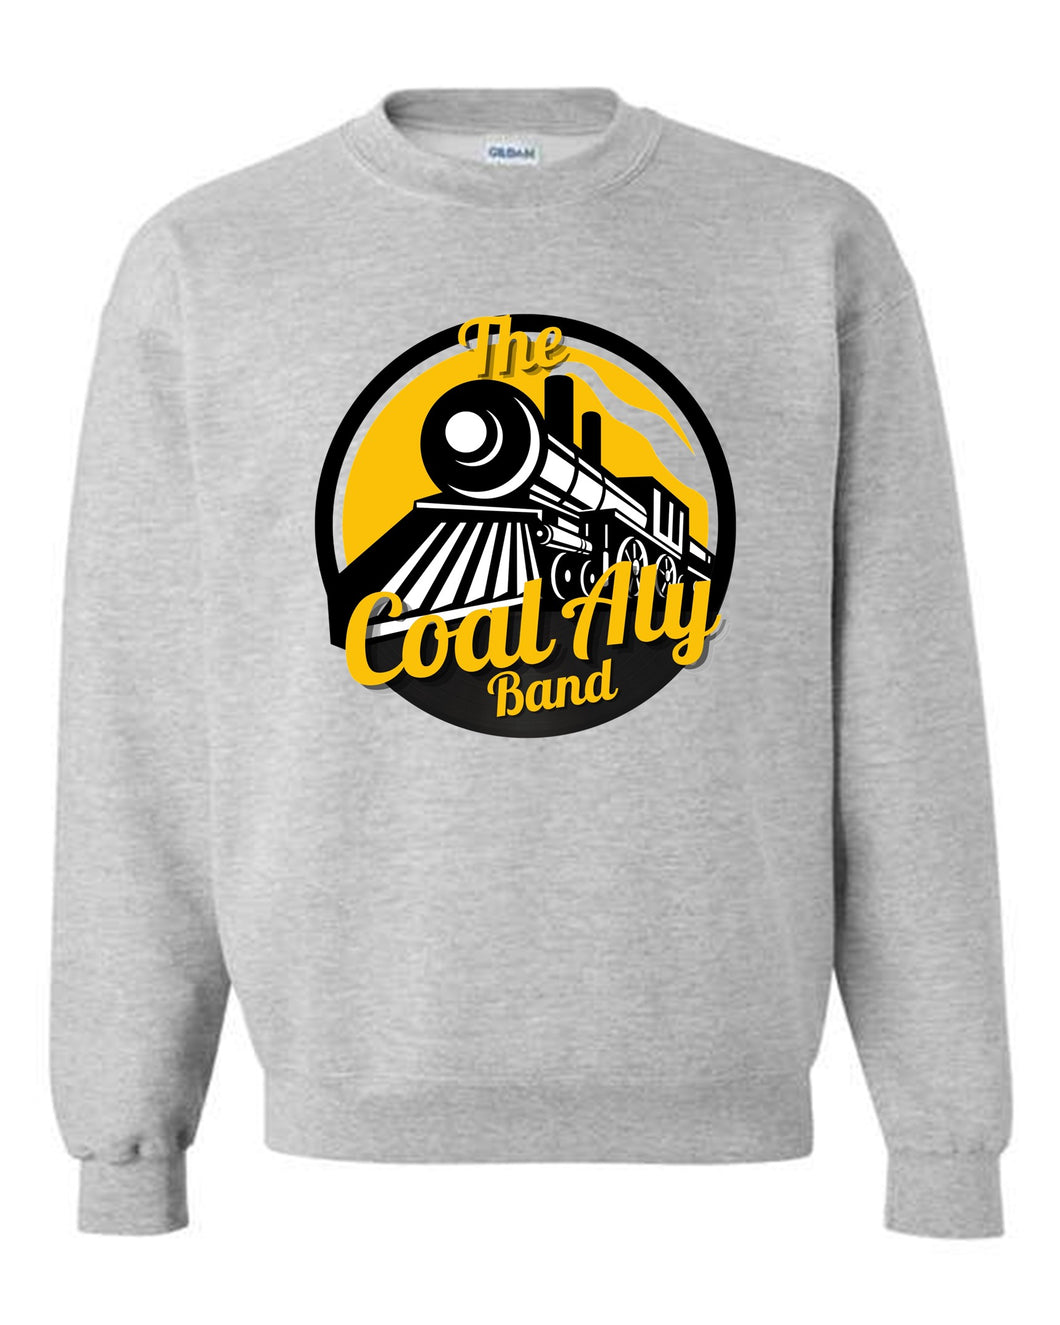 Coal Aly Band Crewneck Sweatshirt (Add'l Color!)